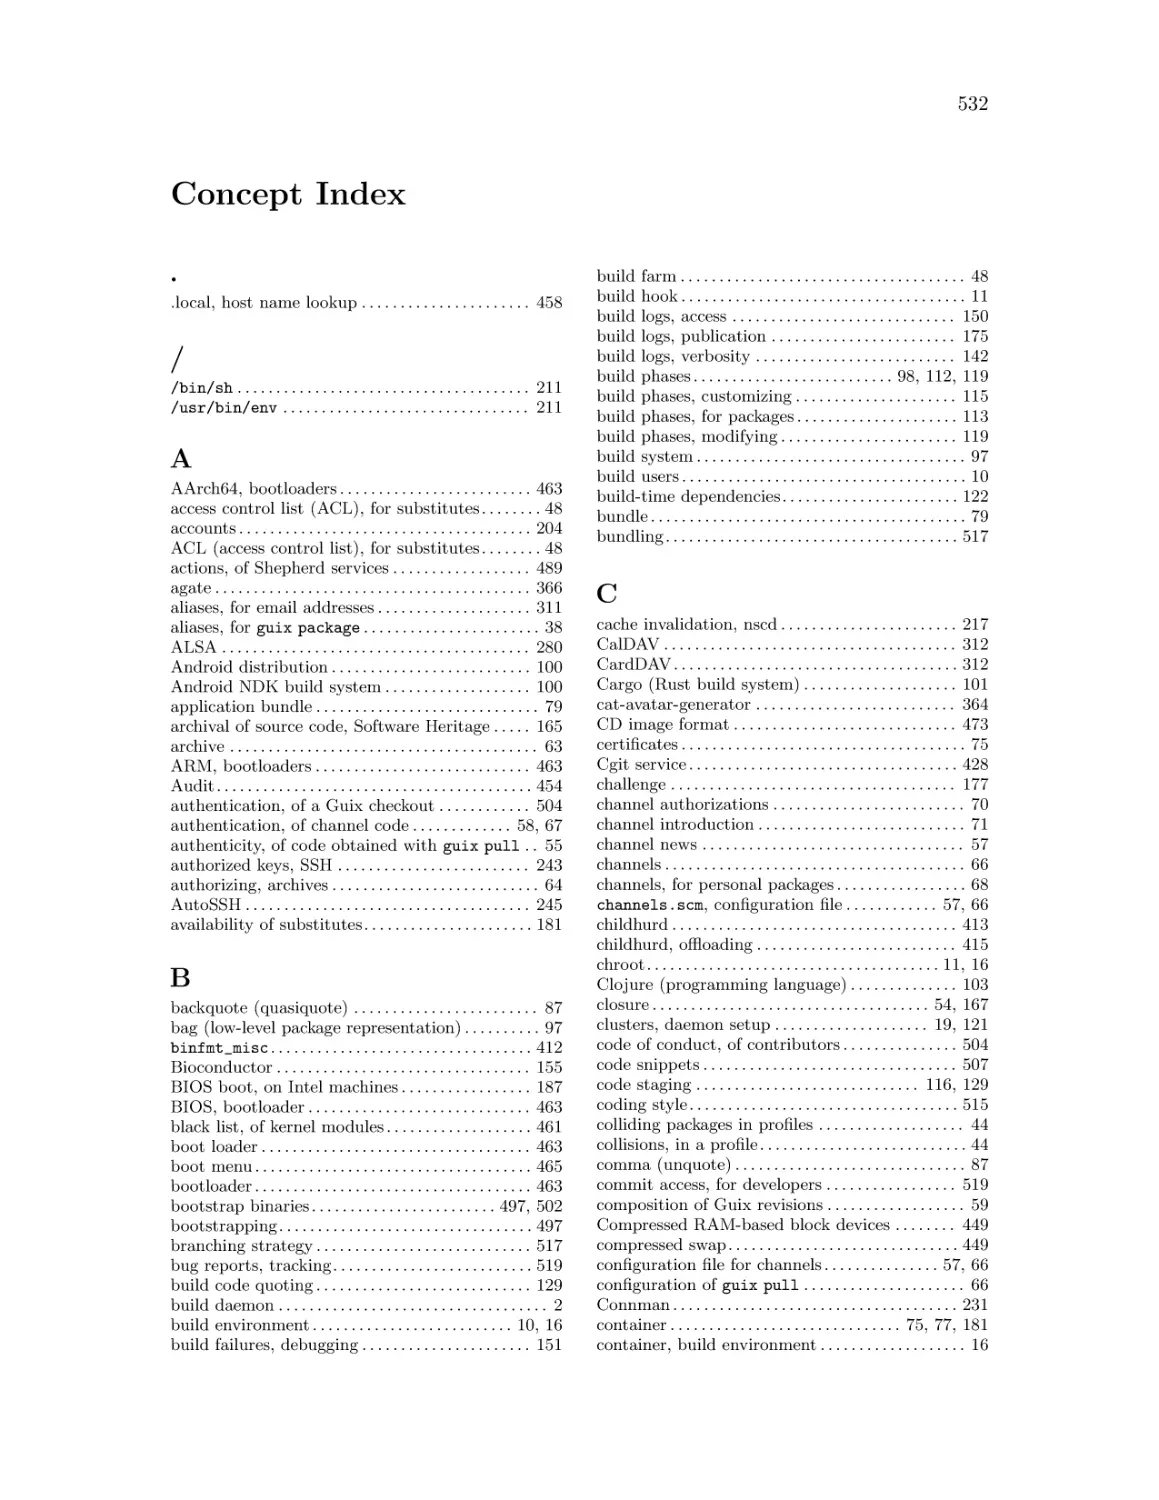 Concept Index